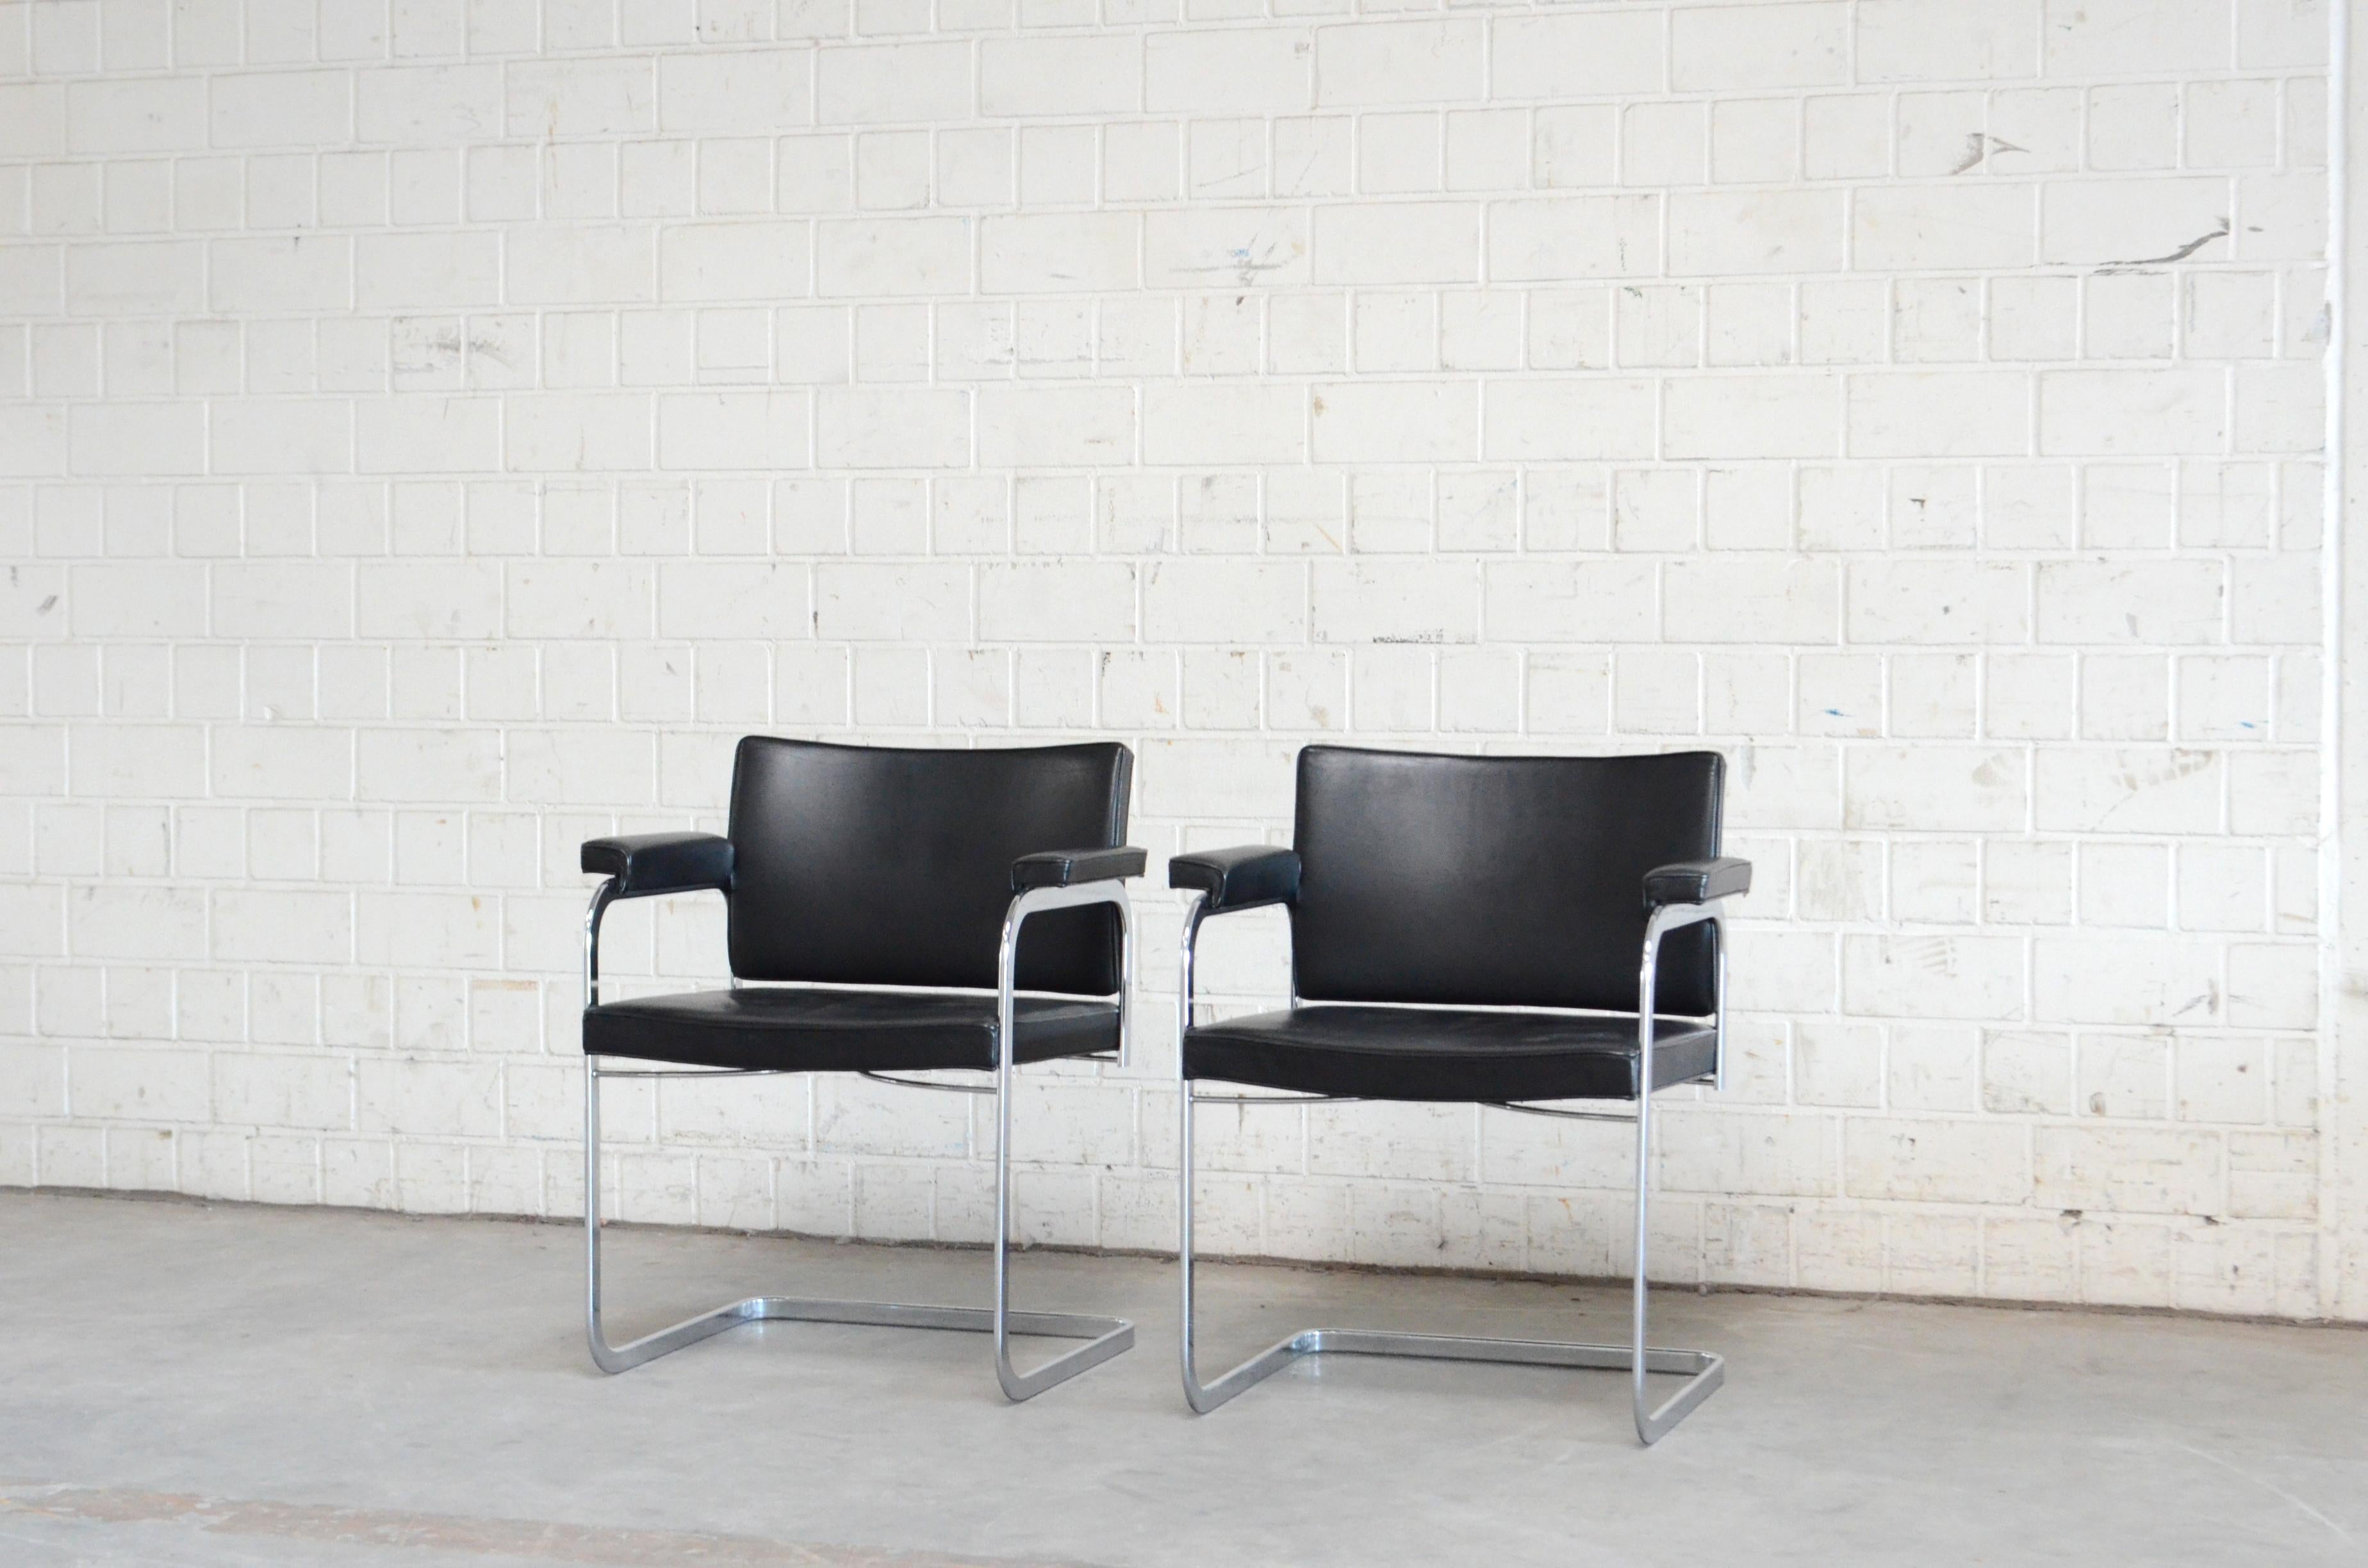 Sessel RH 305 von Robert Haussmann aus dem Jahr 1957, hergestellt von De Sede.
Schwarzes Semianilinleder und ein verchromtes Stahlgestell.
Dies ist ein klassischer Schweizer Designstuhl.
Toller Zustand.
Preis für 1 Stuhl
Wir haben 2 Stühle auf